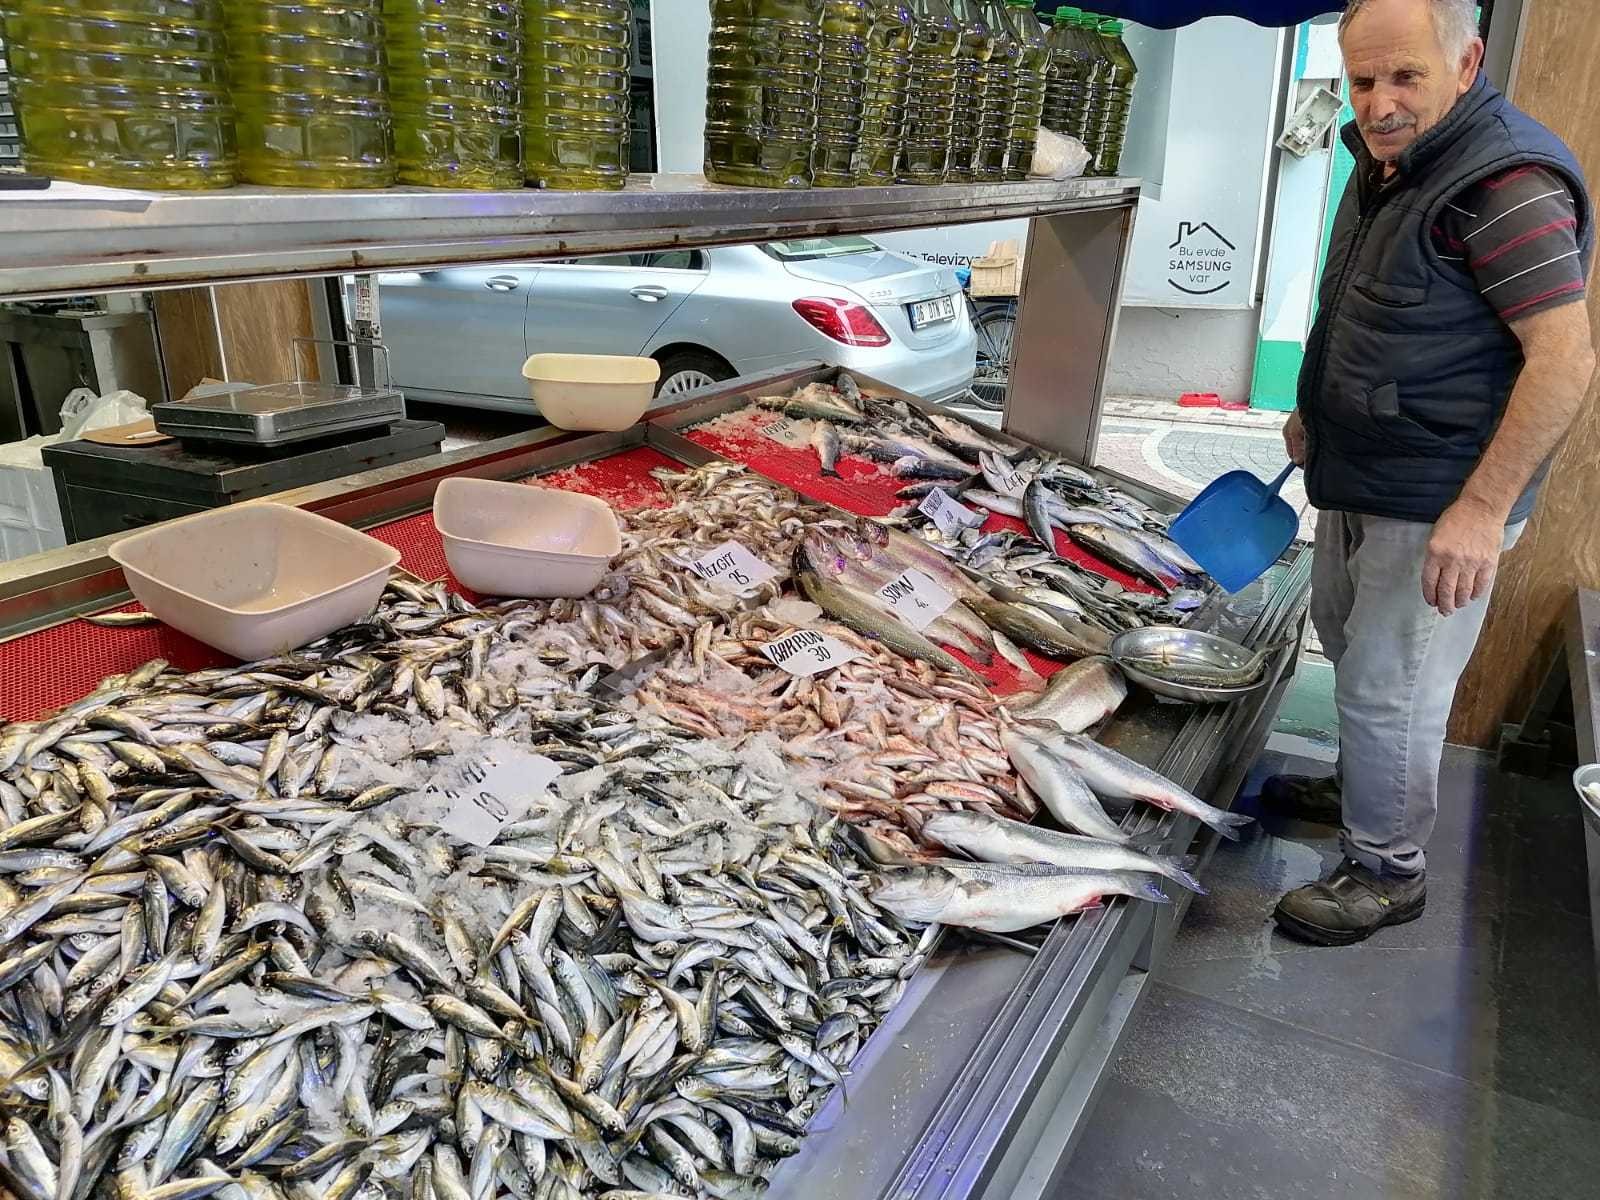 Balık az, fiyatlar pahalı #giresun